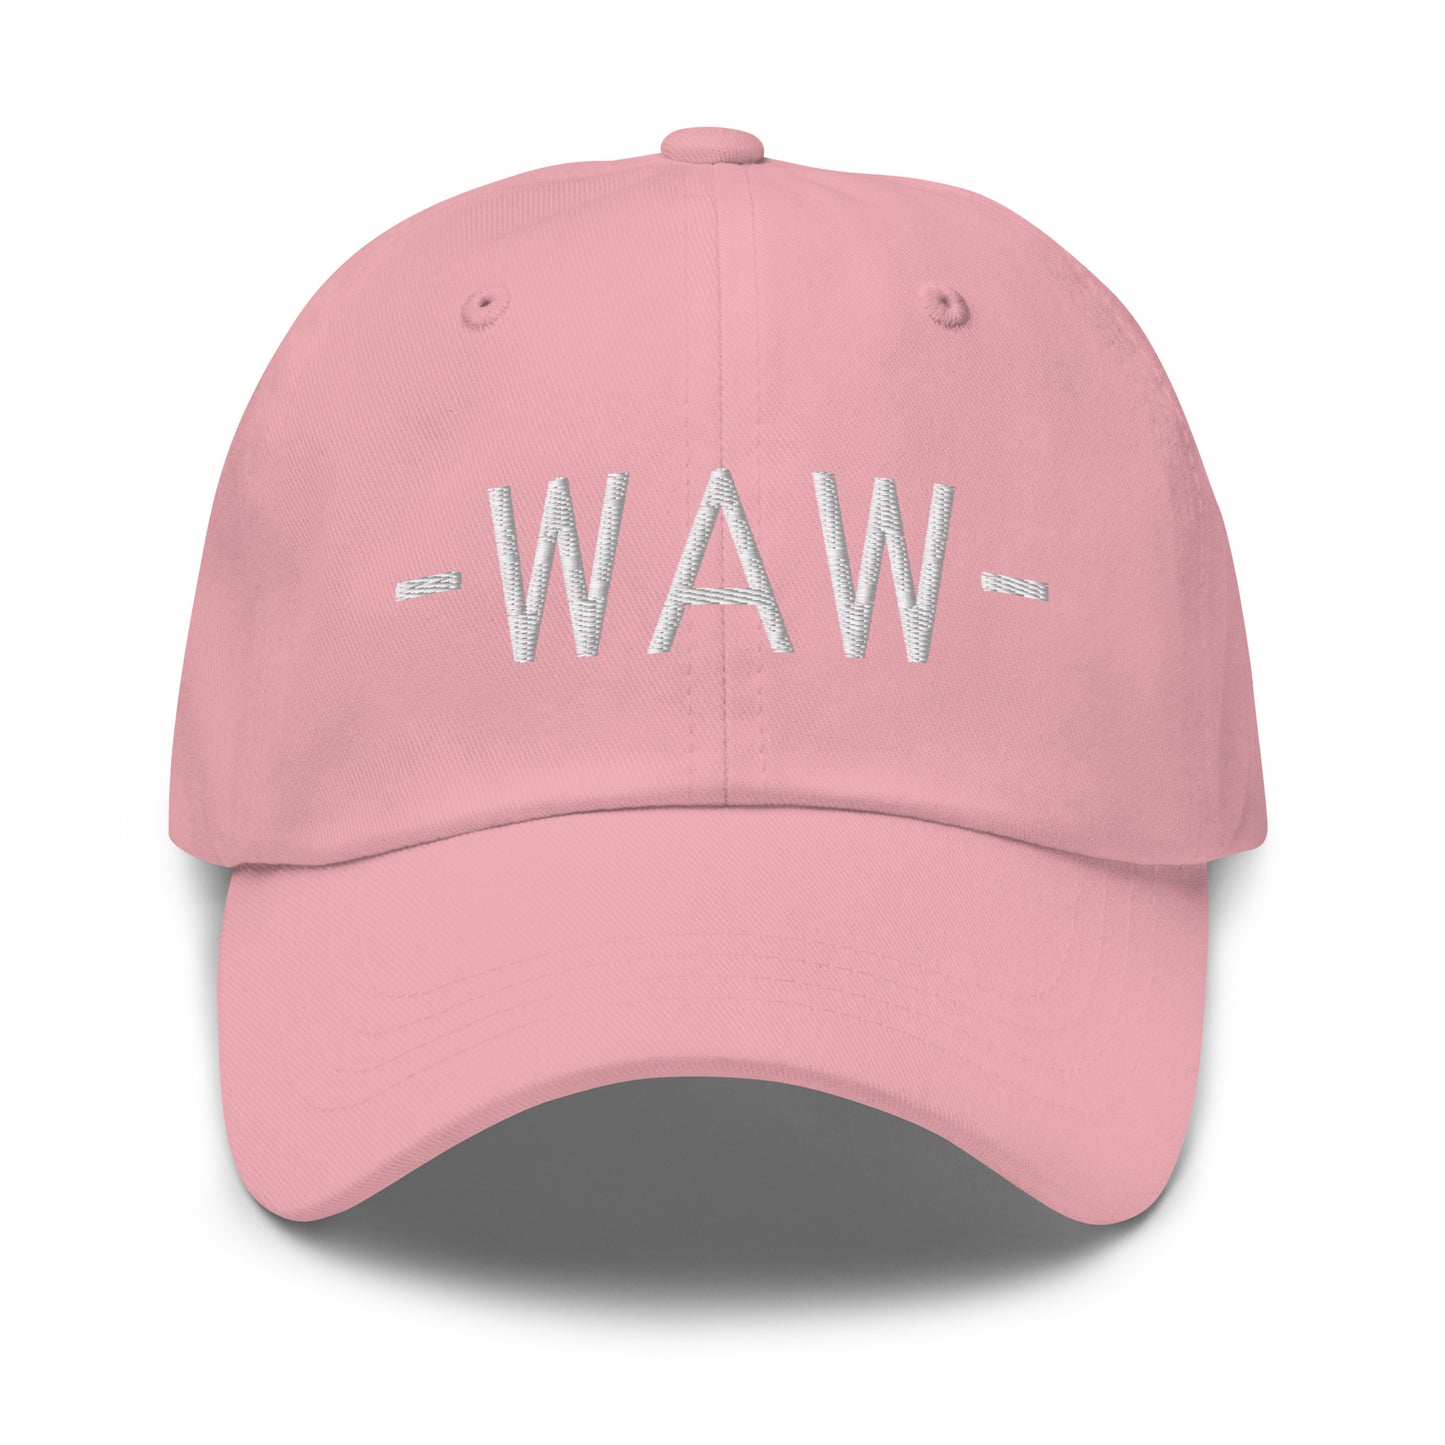 Souvenir Baseball Cap - White • WAW Warsaw • YHM Designs - Image 25